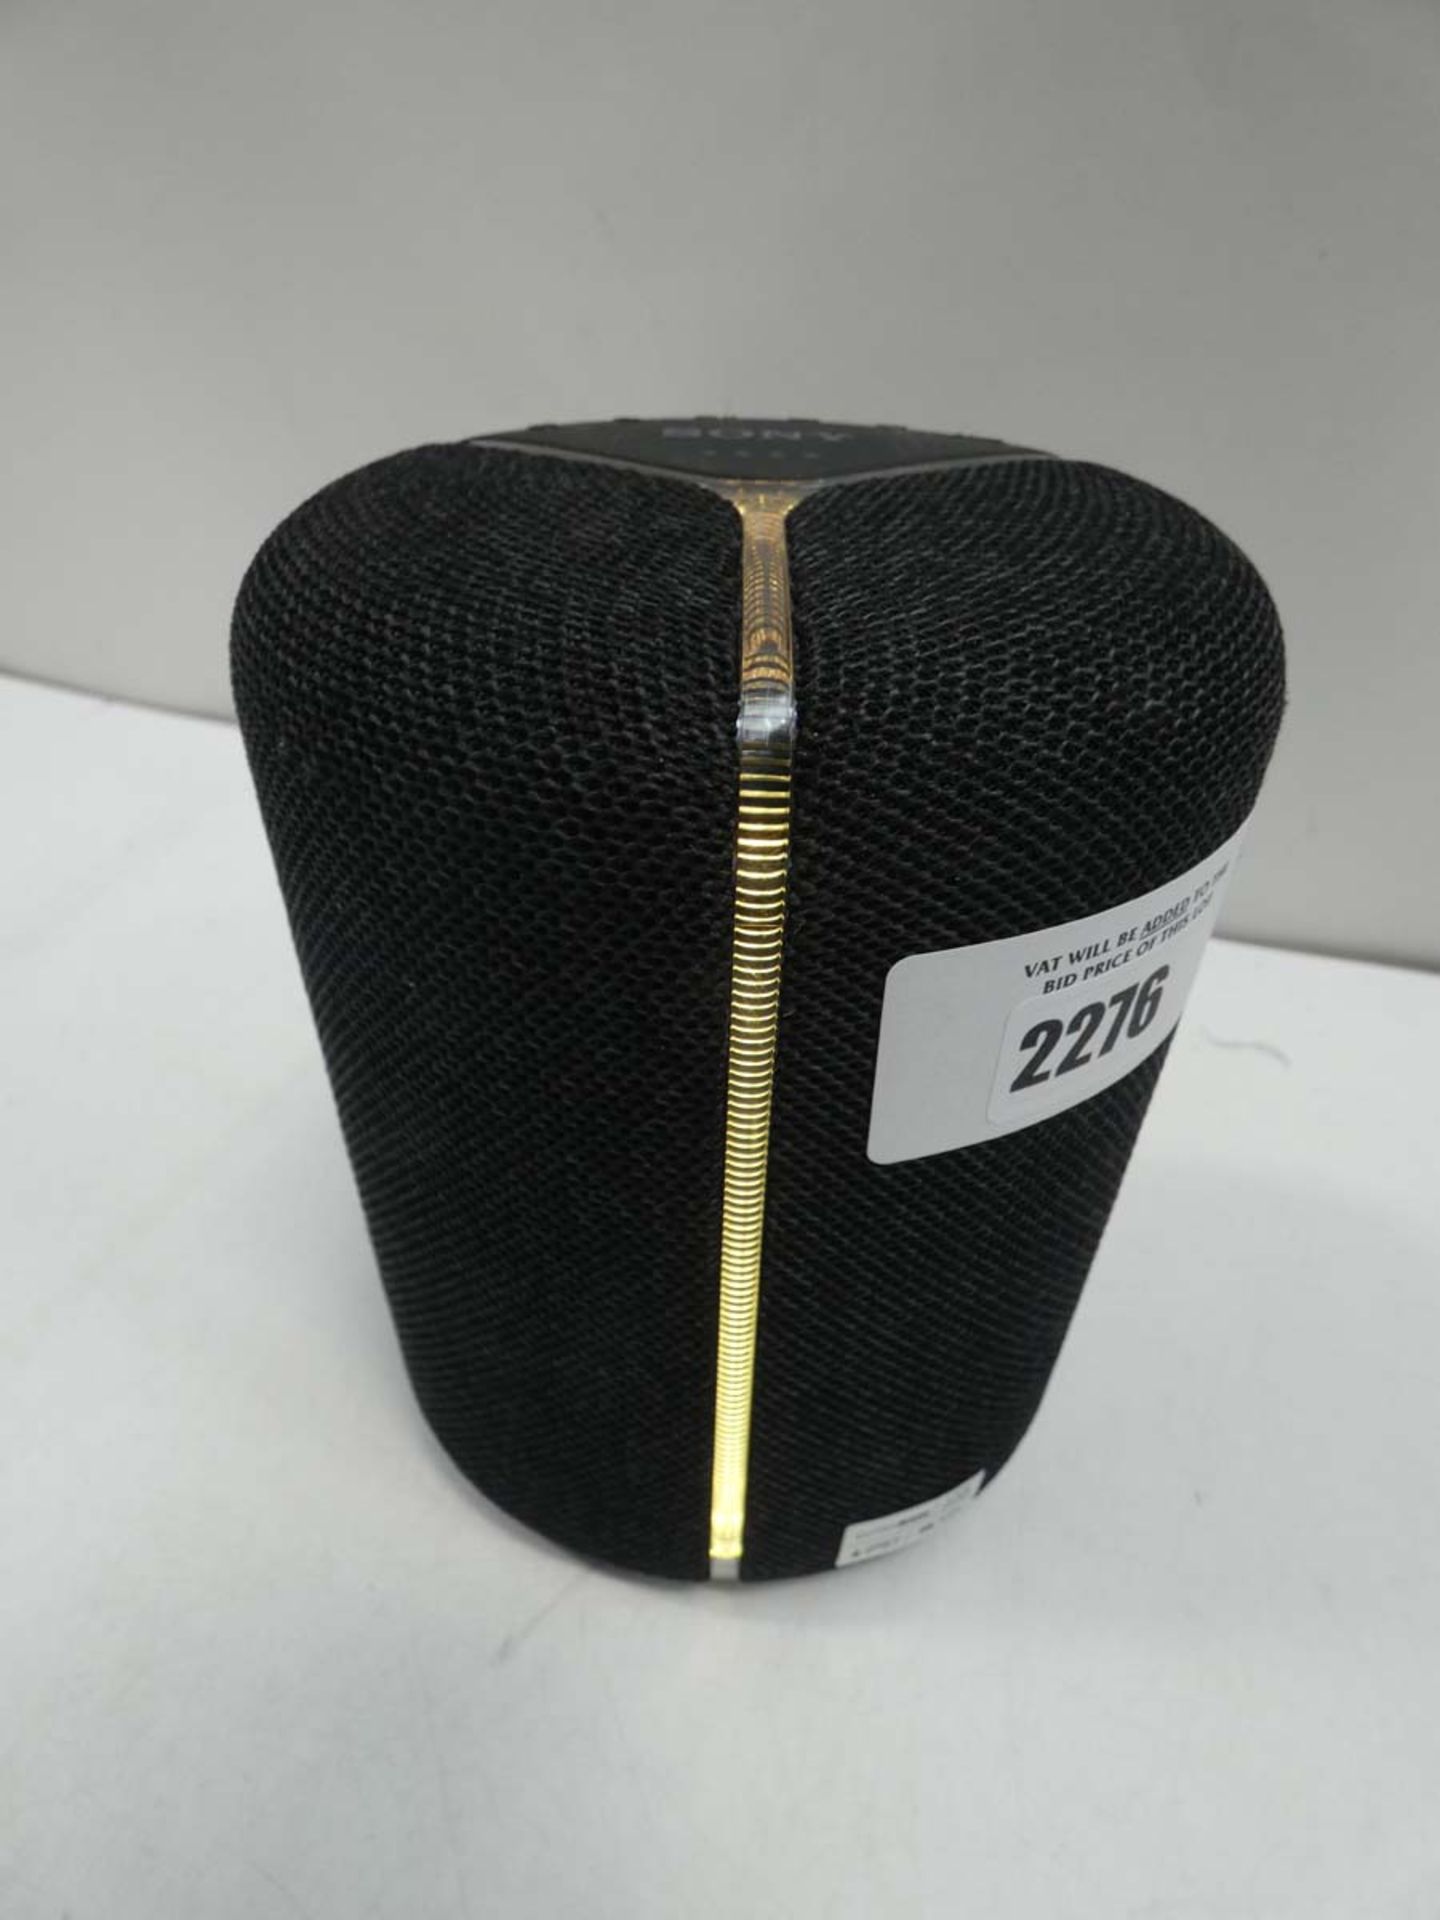 Sony ExtraBass SRS-XB402M wireless speaker